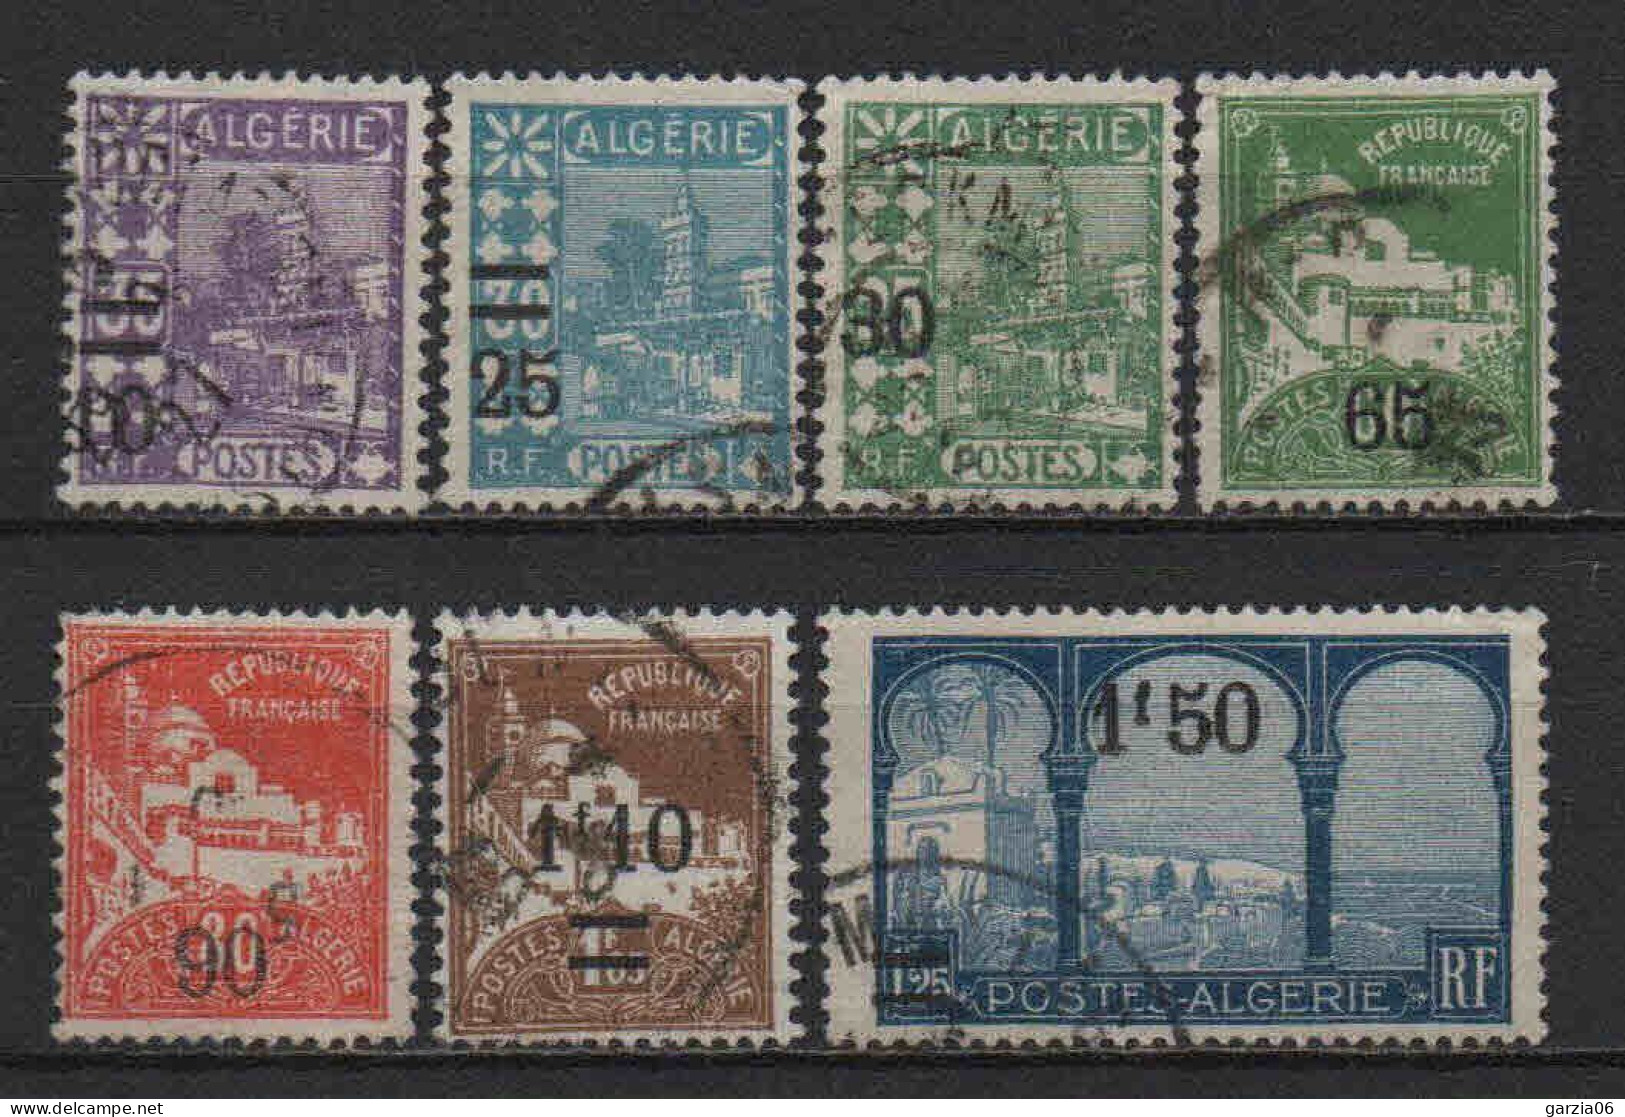 Algérie - 1927 - Tb Antérieurs Surch  - N° 71 à 77 - Oblit - Used - Used Stamps